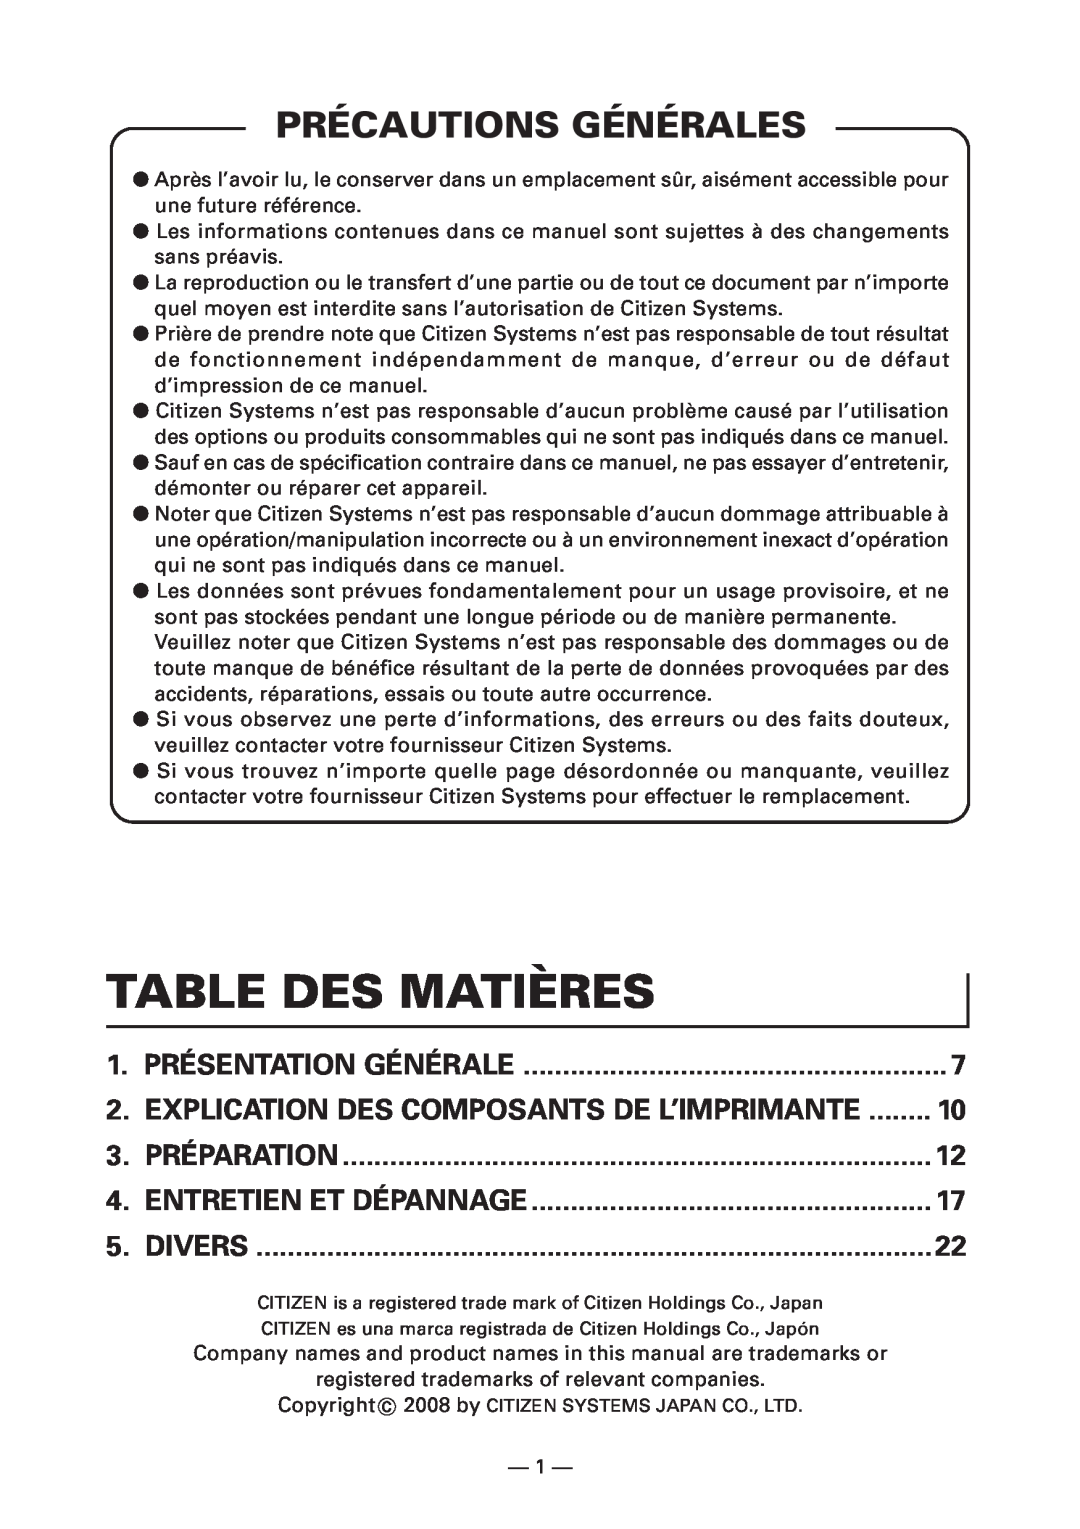 Citizen Systems CT-S4000DCM Table Des Matières, Précautions Générales, Divers, Présentation Générale, Préparation 